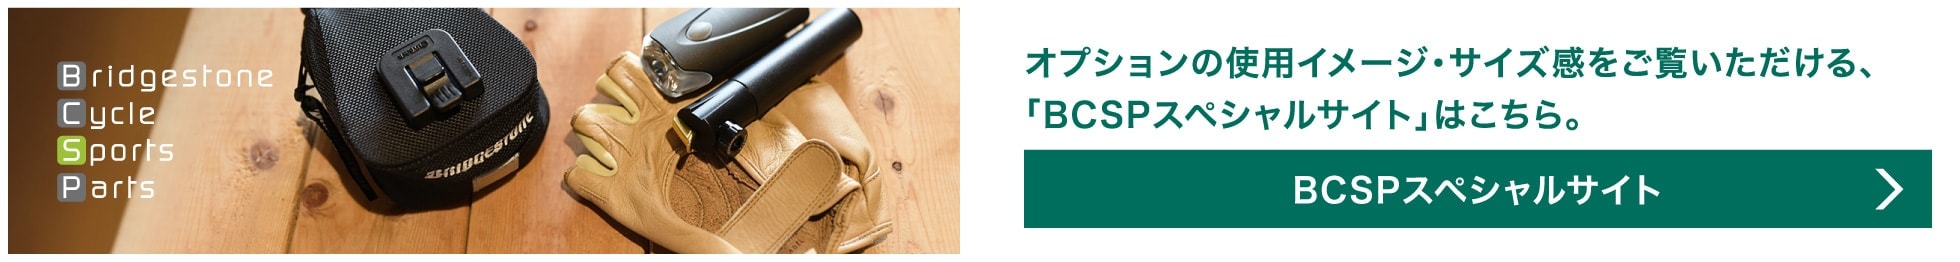 オプションの使用イメージ・サイズ感をご覧いただける、「BCSPスペシャルサイト」はこちら。／BCSPスペシャルサイトへリンク